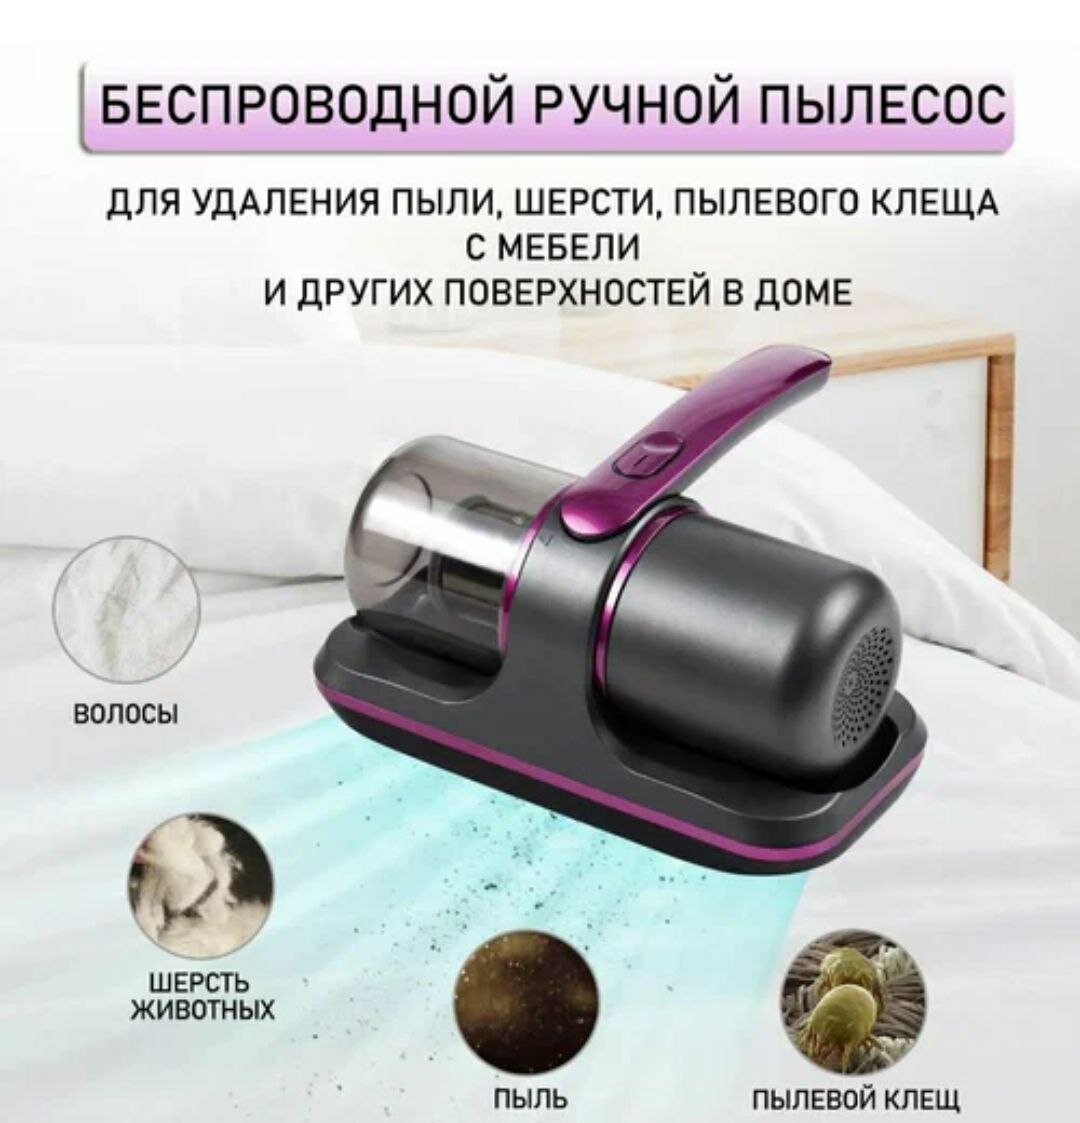 Ручной беспроводной пылесос для удаления пыли и пылевого клеща для мебели с УФ лампой